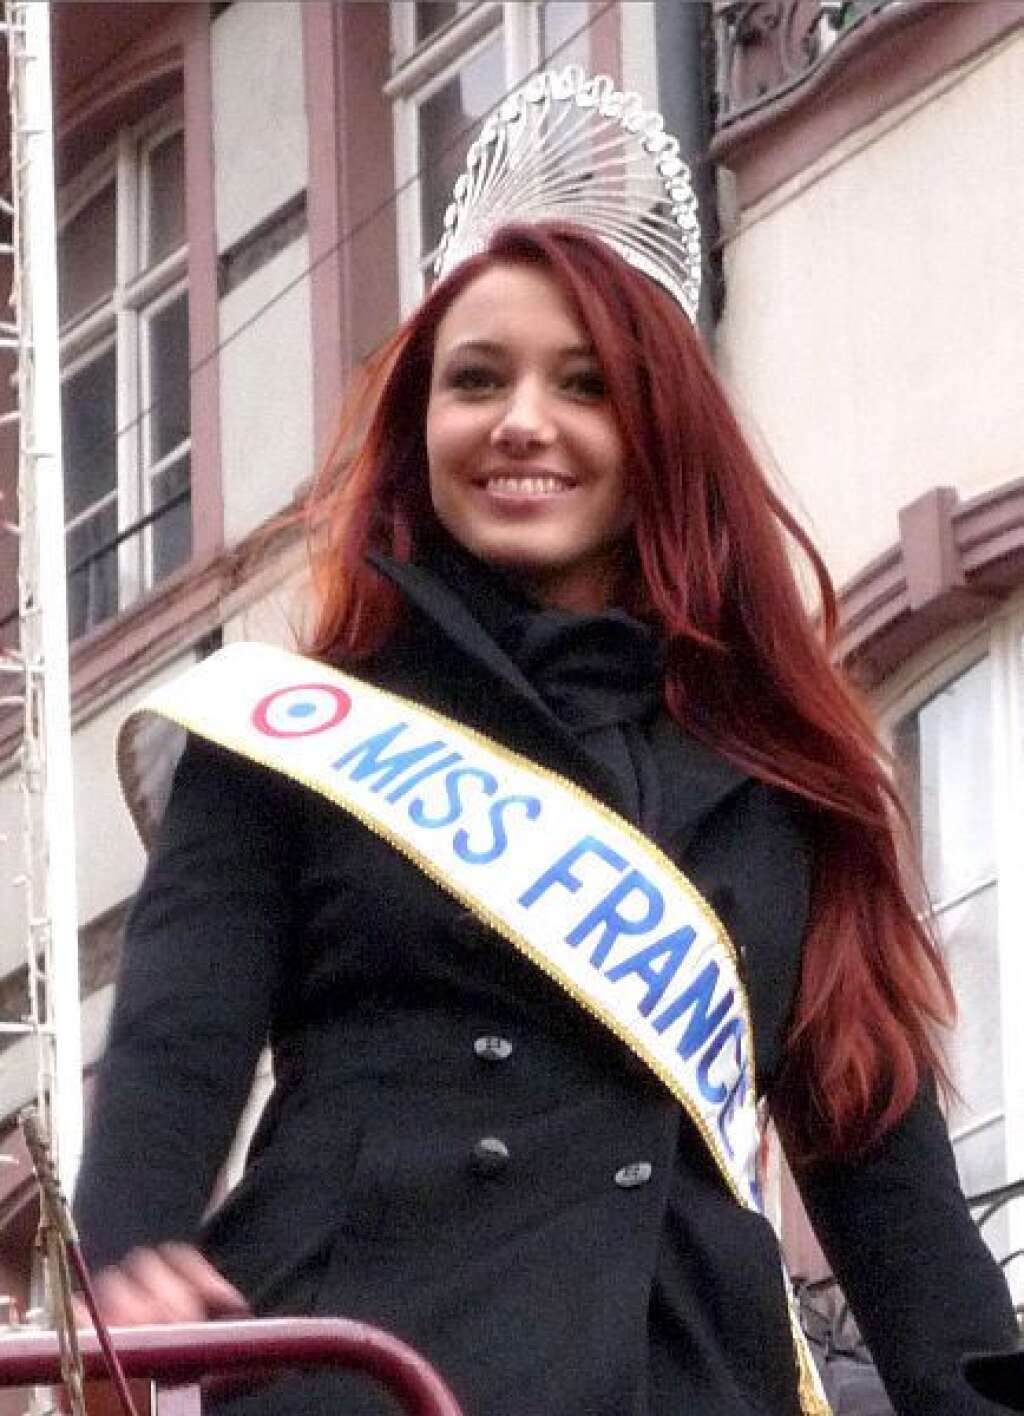 Miss France 2012 élue dans le Haut-Rhin - Avec 146 voix, Delphine Wespiser (Miss France 2012) a été élue conseillère municipale dans le petit village de Magstatt-Le-Bas (Haut-Rhin) dès le premier tour.